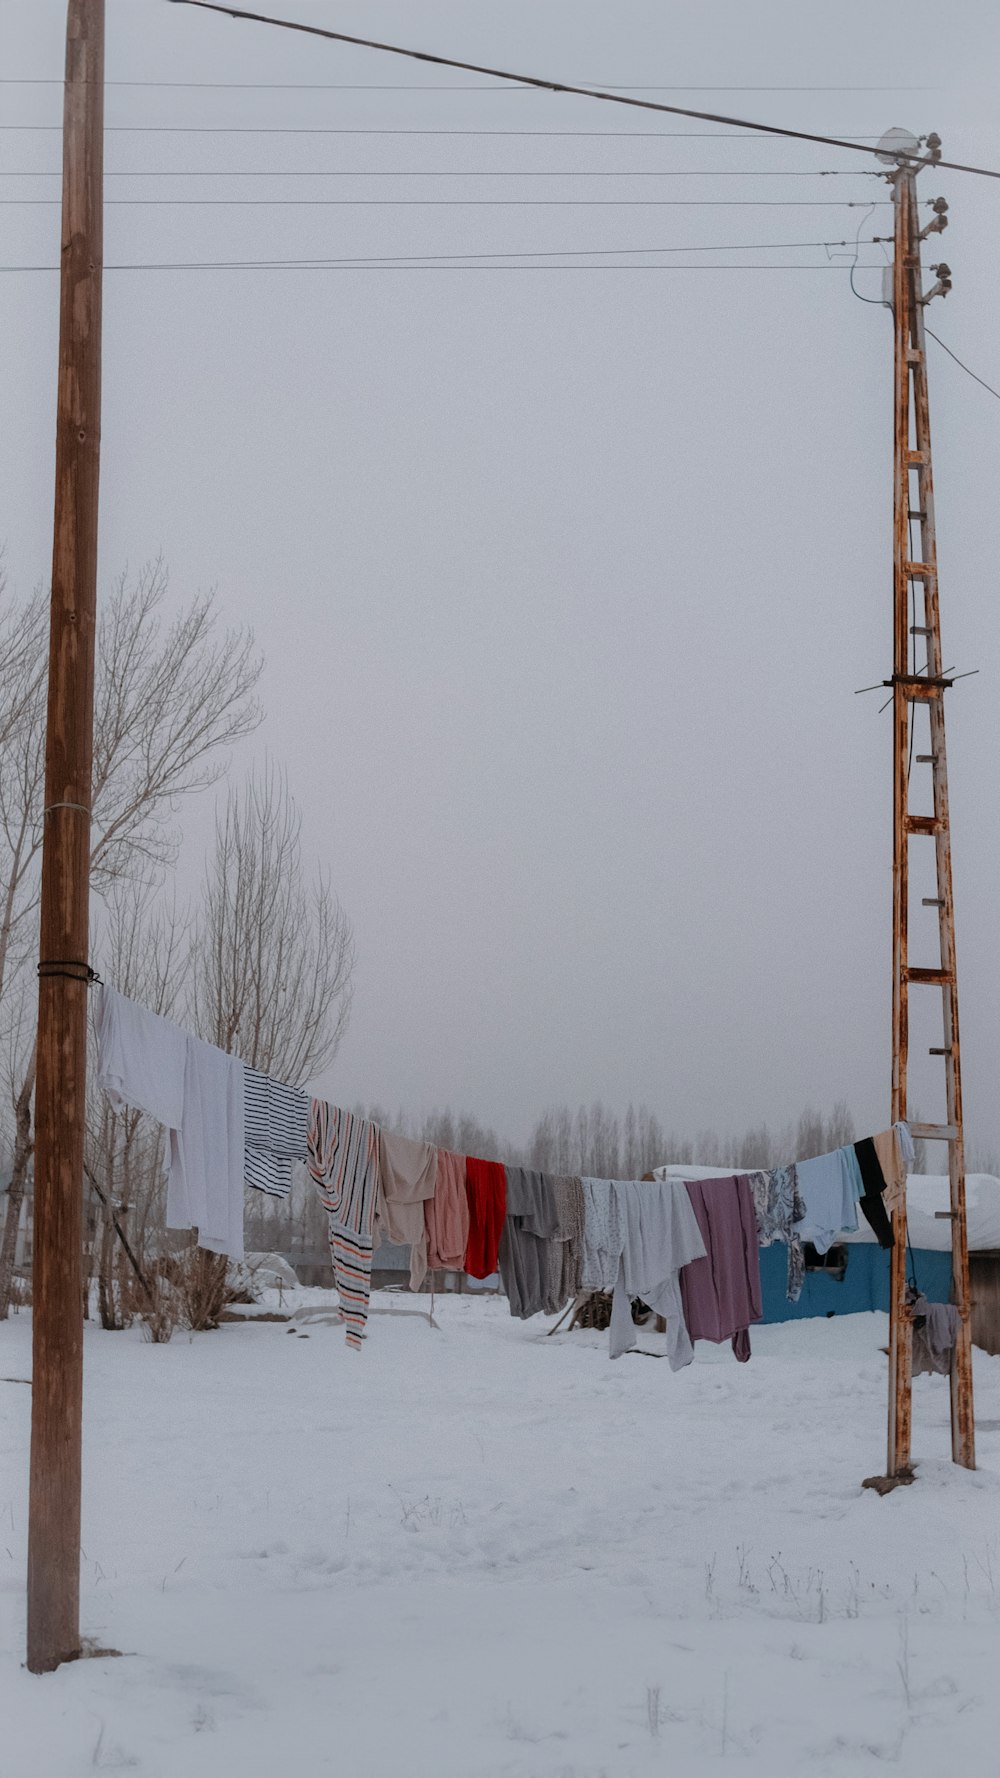 una fila di vestiti appesi a una corda per stendere i panni nella neve